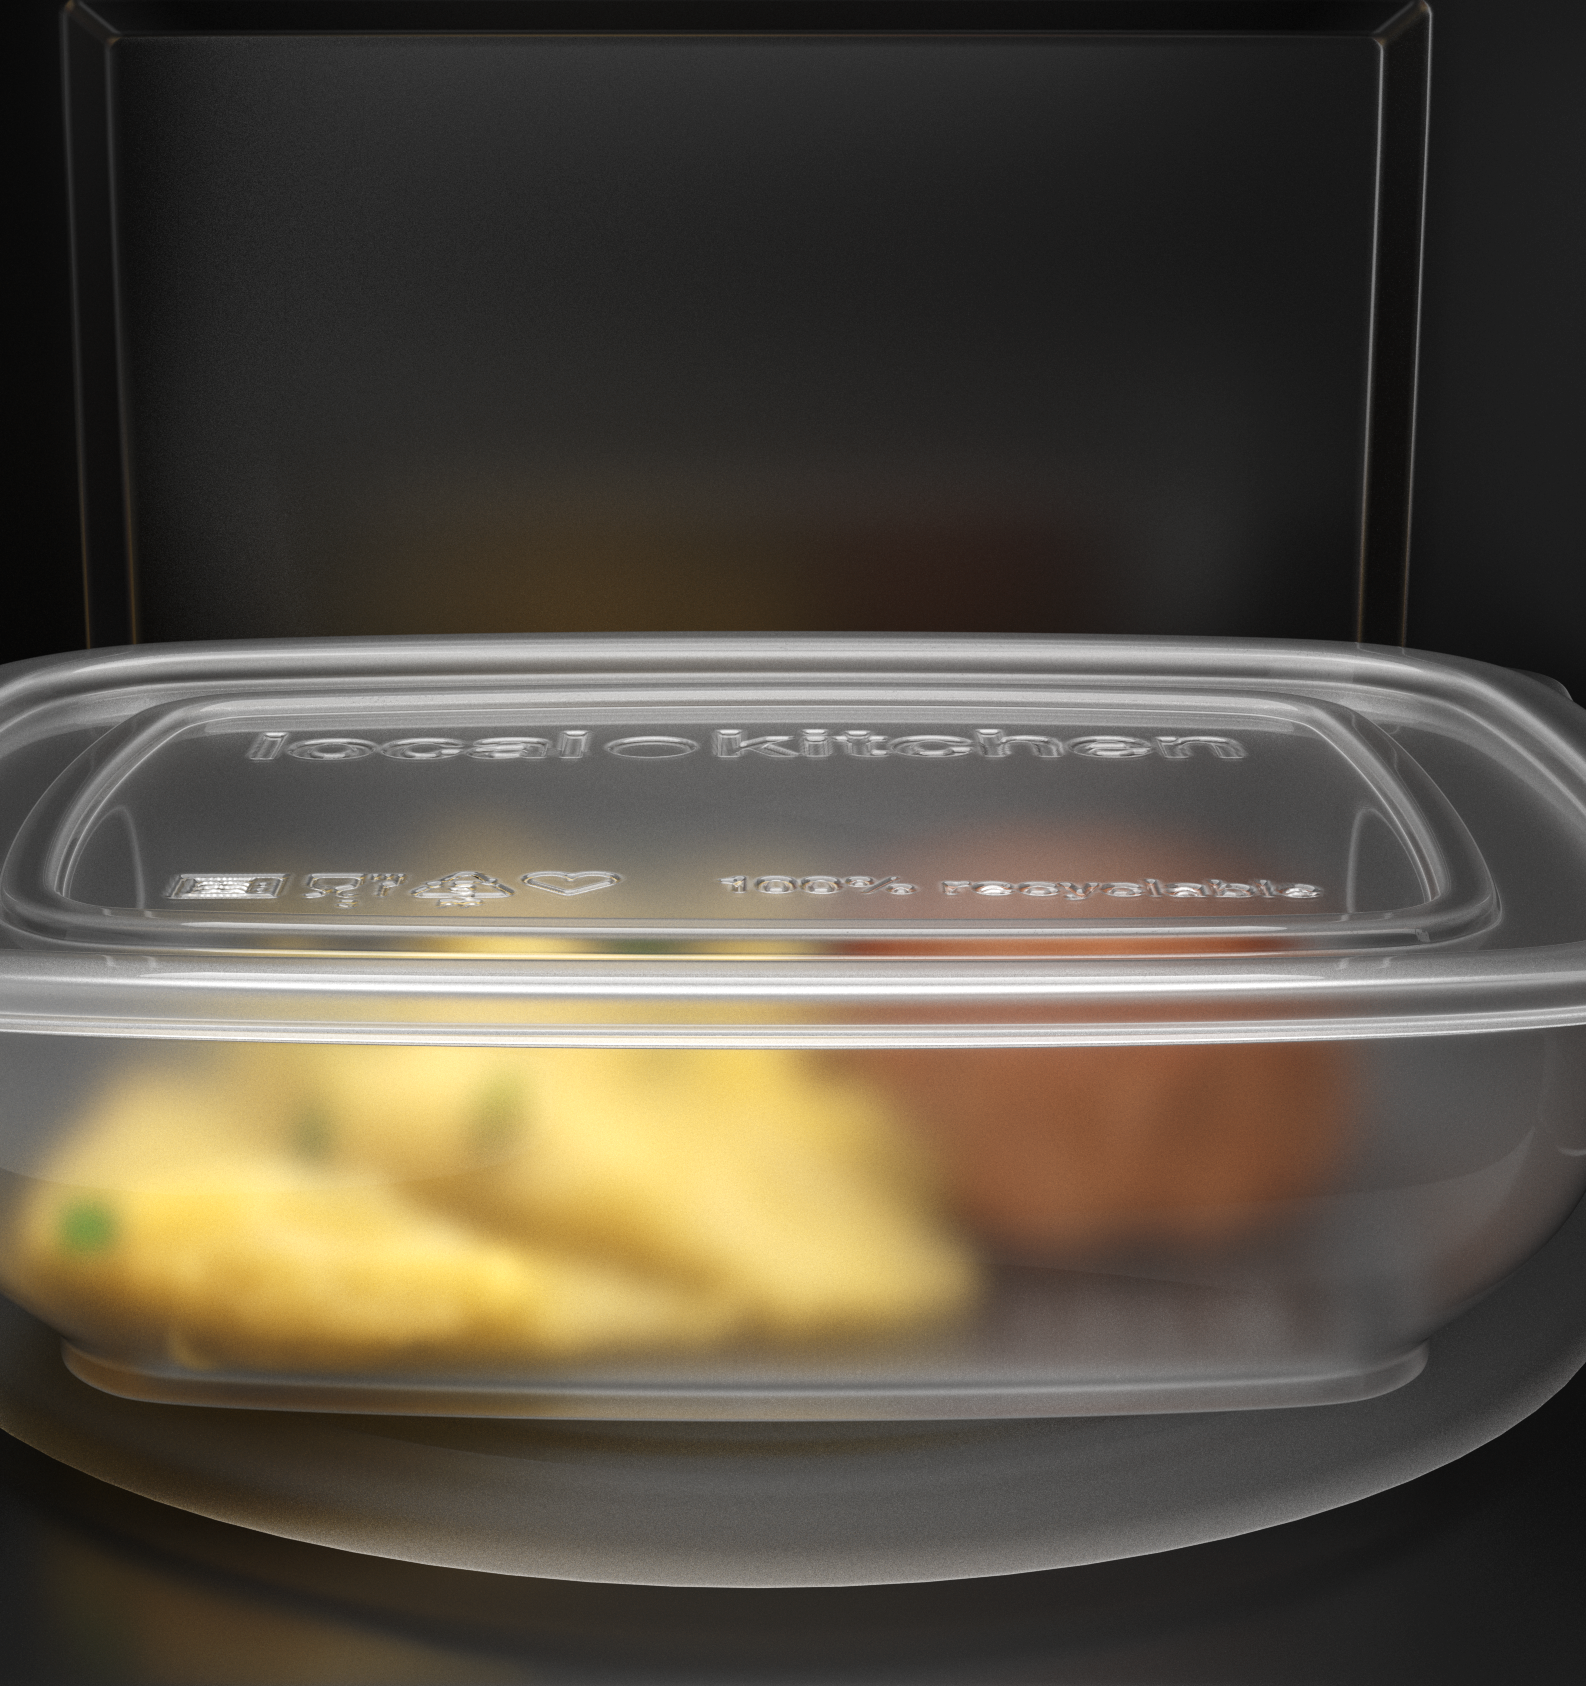 Новые контейнеры «Кухни на районе» содержат на 20% меньше PP5 пластика